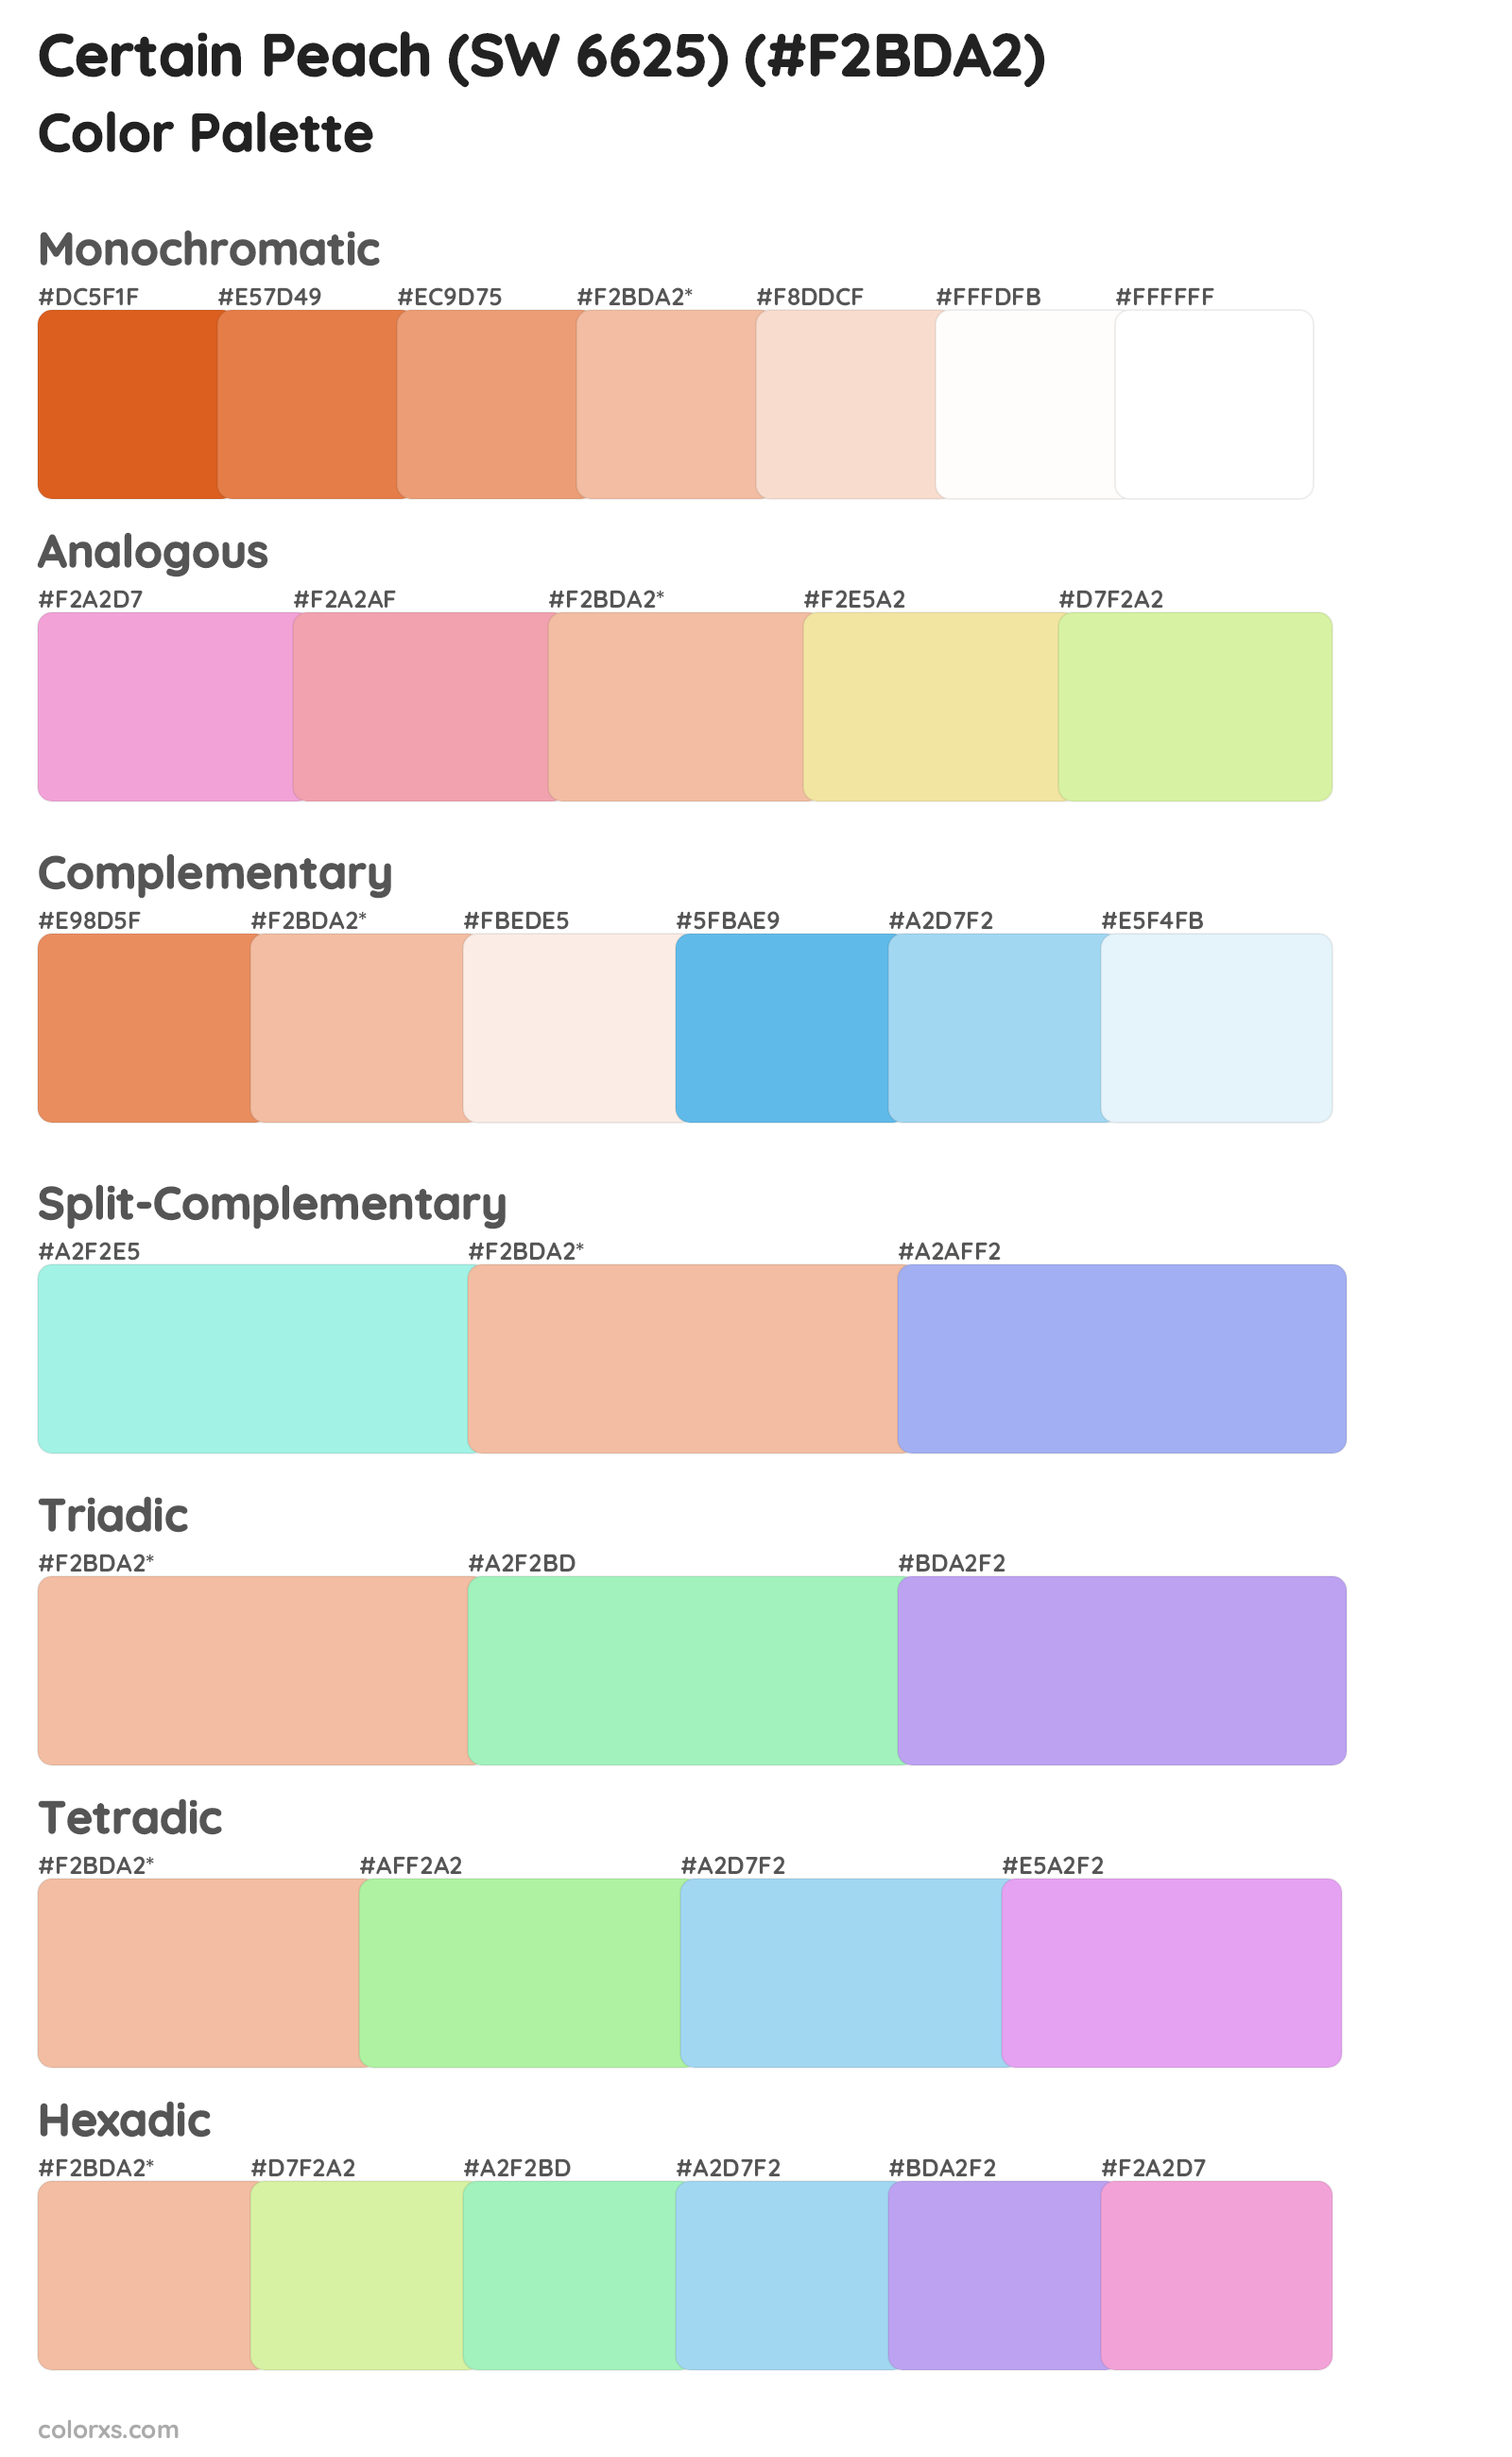 Certain Peach (SW 6625) Color Scheme Palettes